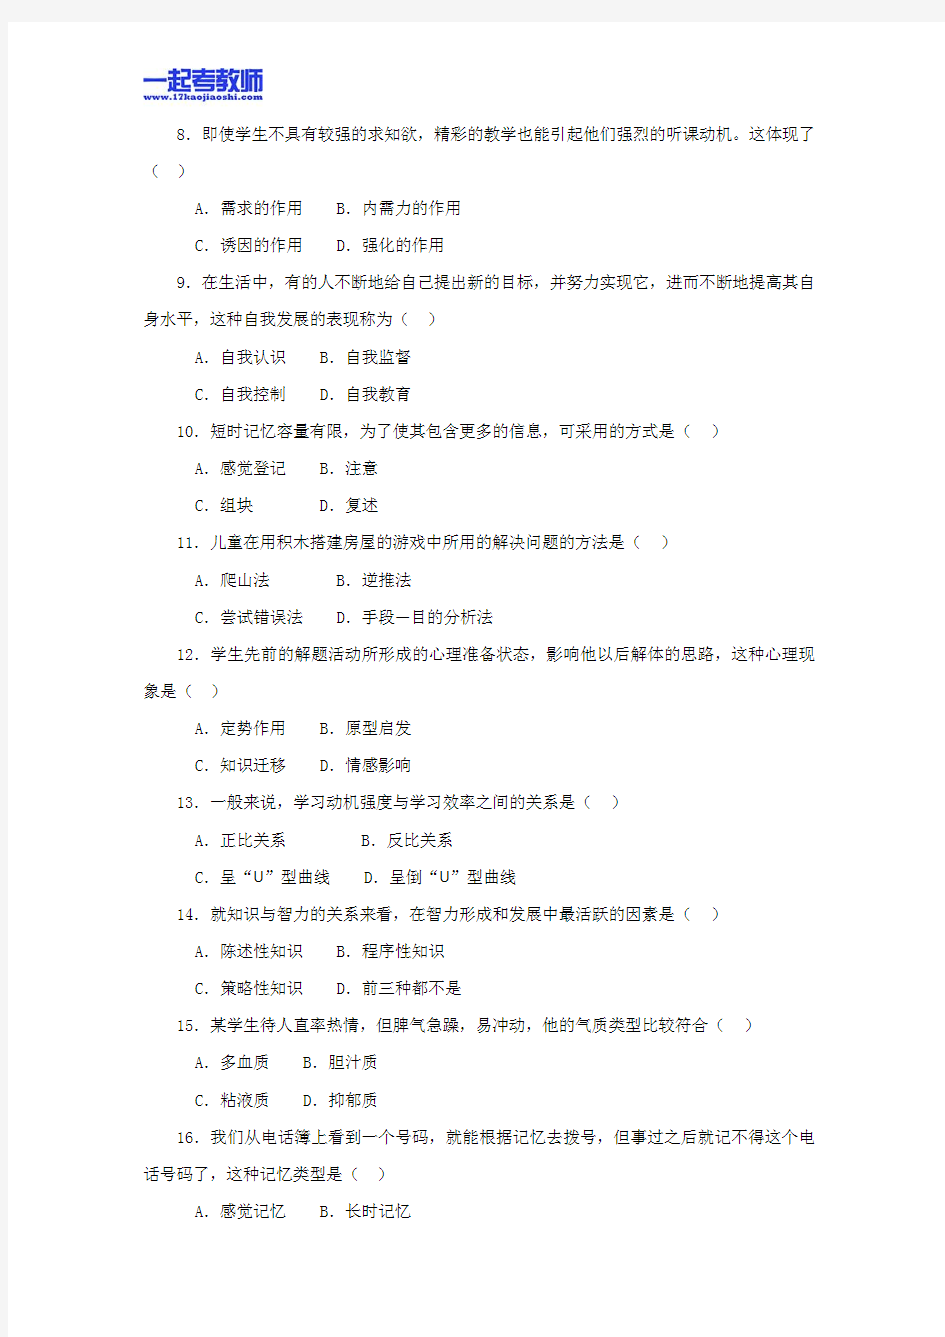 2013年广东省东莞市教师招聘考试笔试教育综合真题答案解析